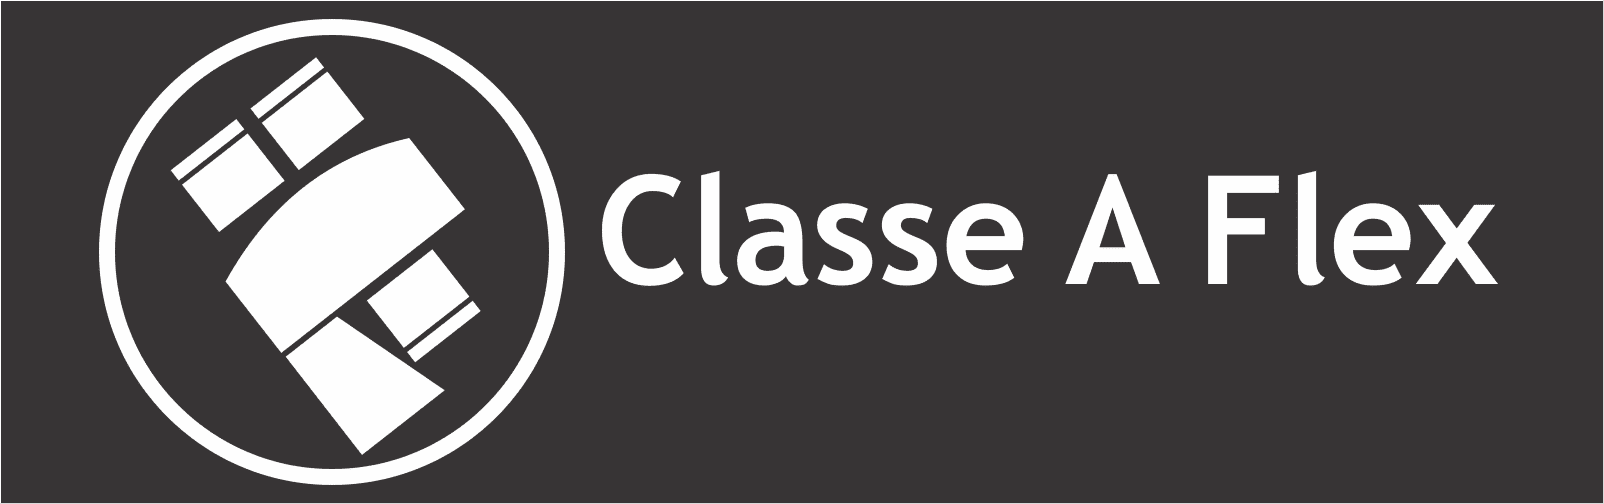 Classe A Flex